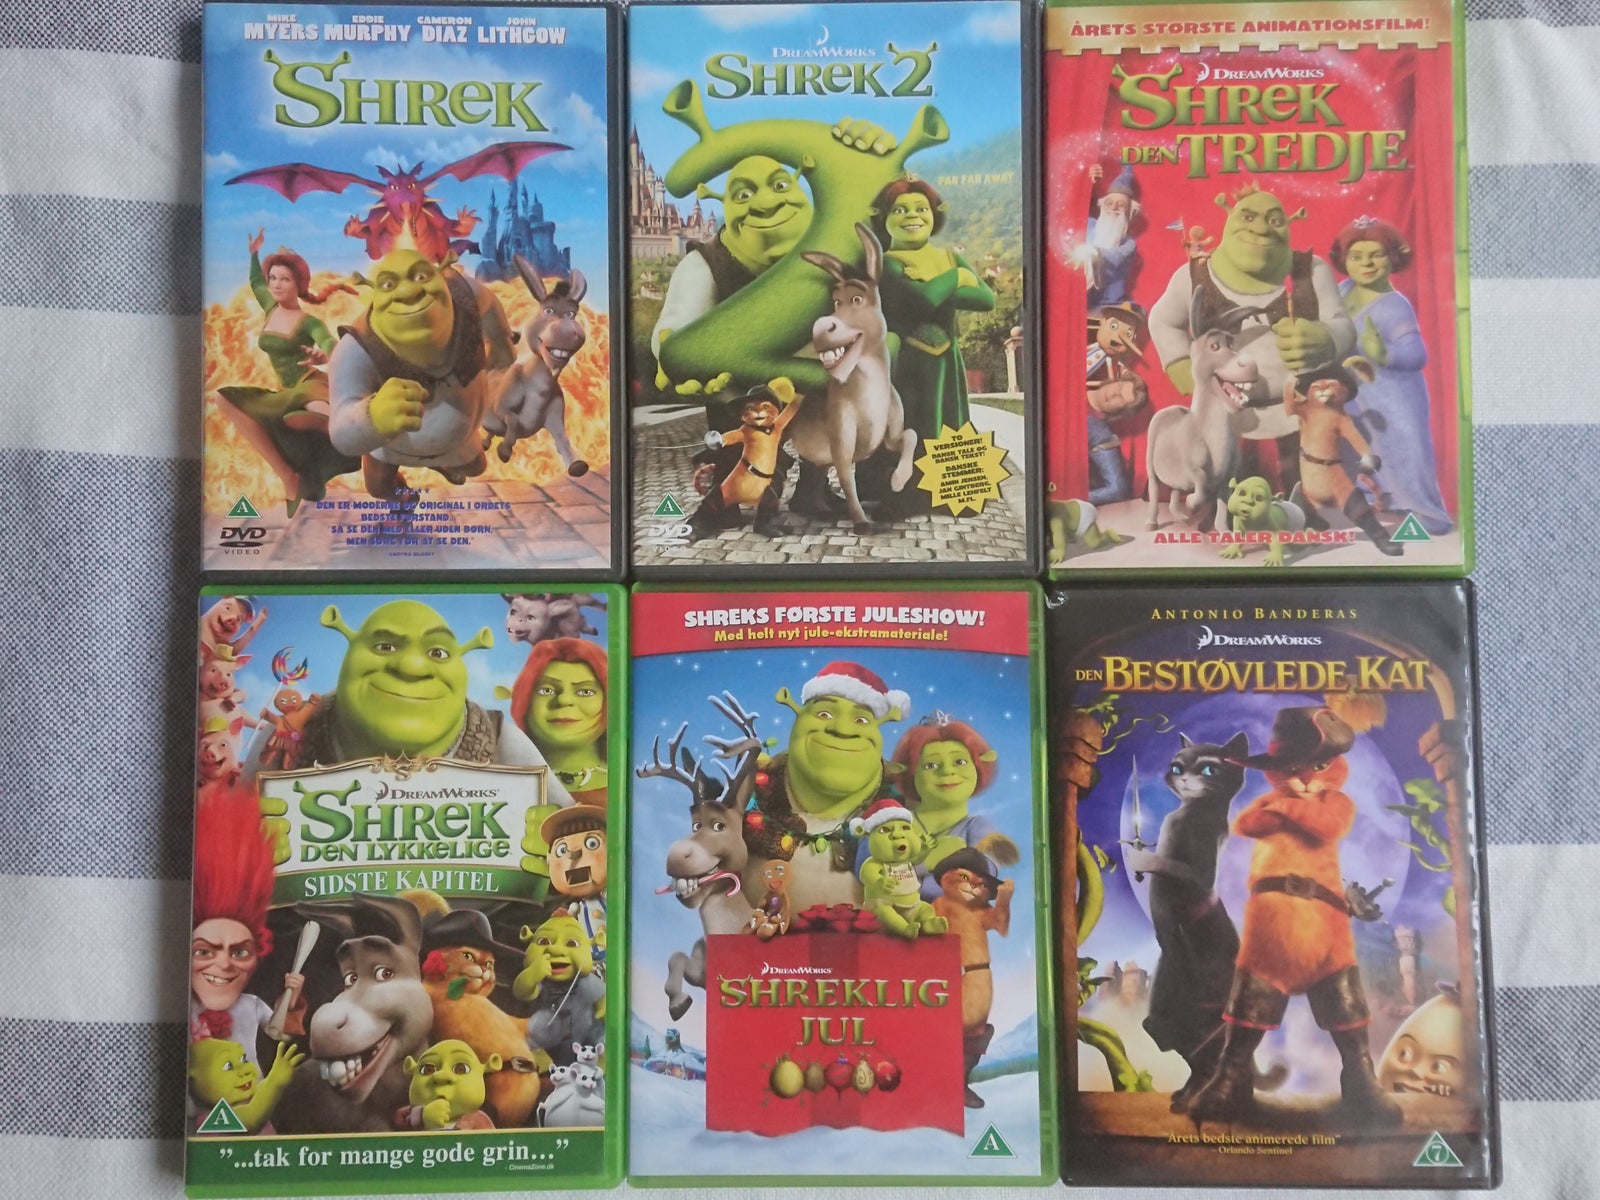 bakke Ombord forbrug Shrek, DVD, animation - dba.dk - Køb og Salg af Nyt og Brugt